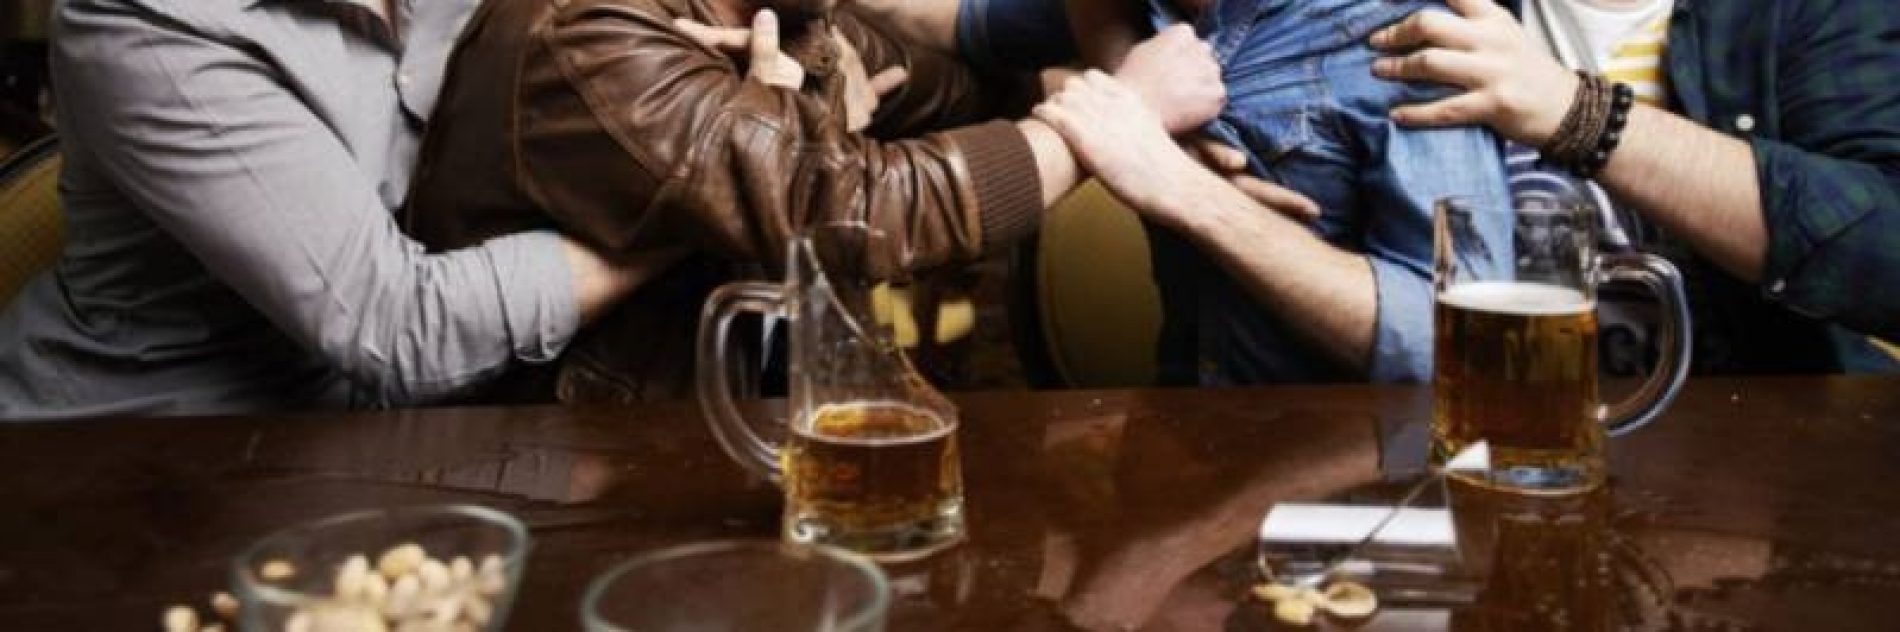 REGIÃO: Falta de máscara acaba em briga entre cliente e gerente de bar